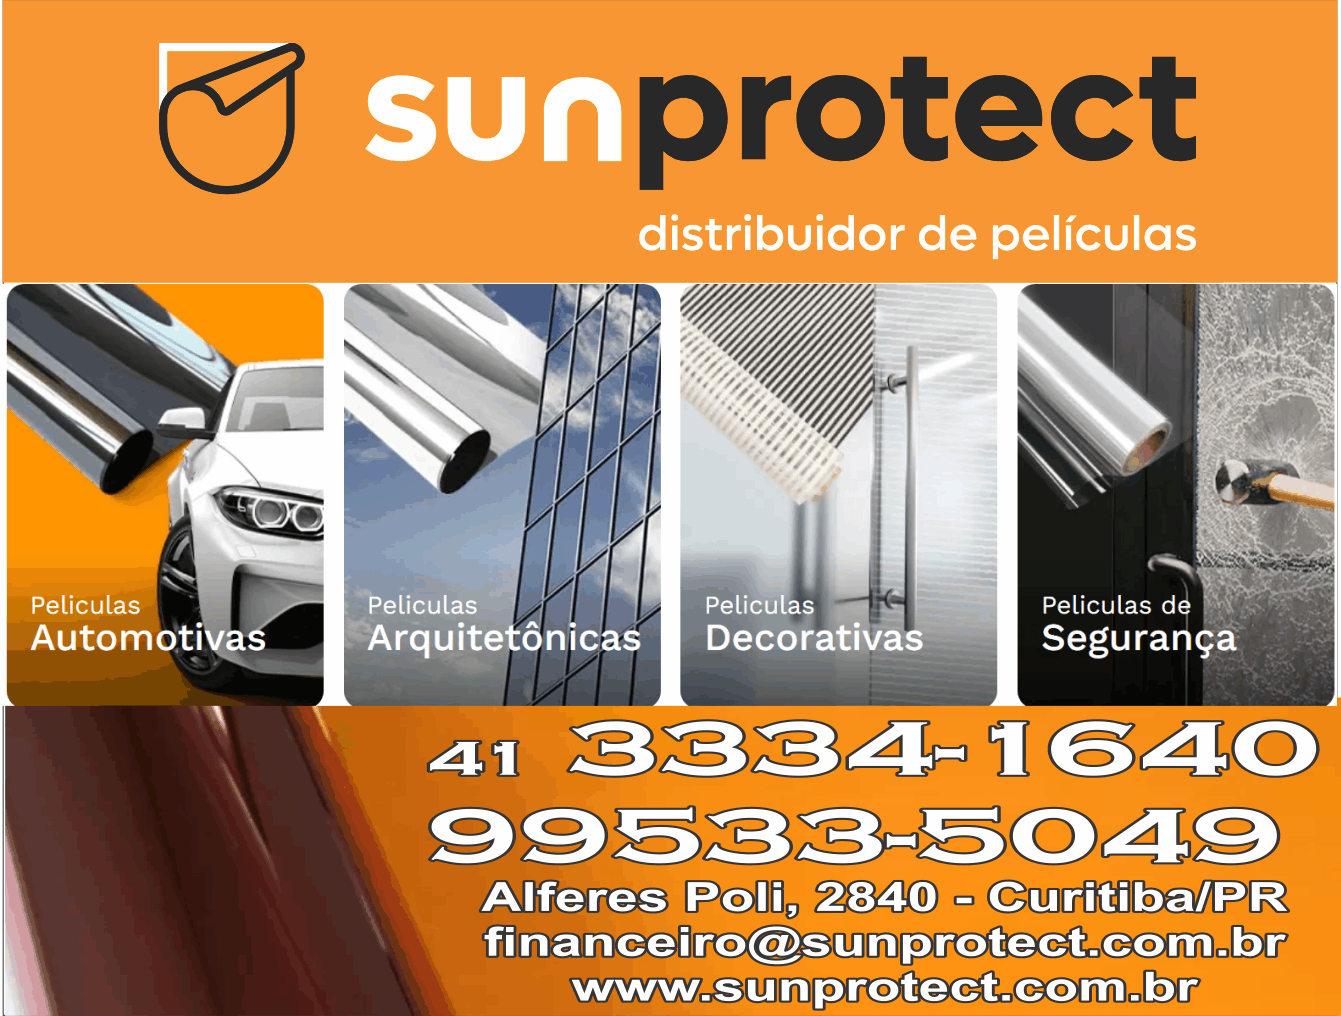 Sunprotect Distribuídor de películas      RUA ALFERES POLI, 2840, CURITIBA - PR  Fones: (41) 3334-1640 / (41) 99533-5049